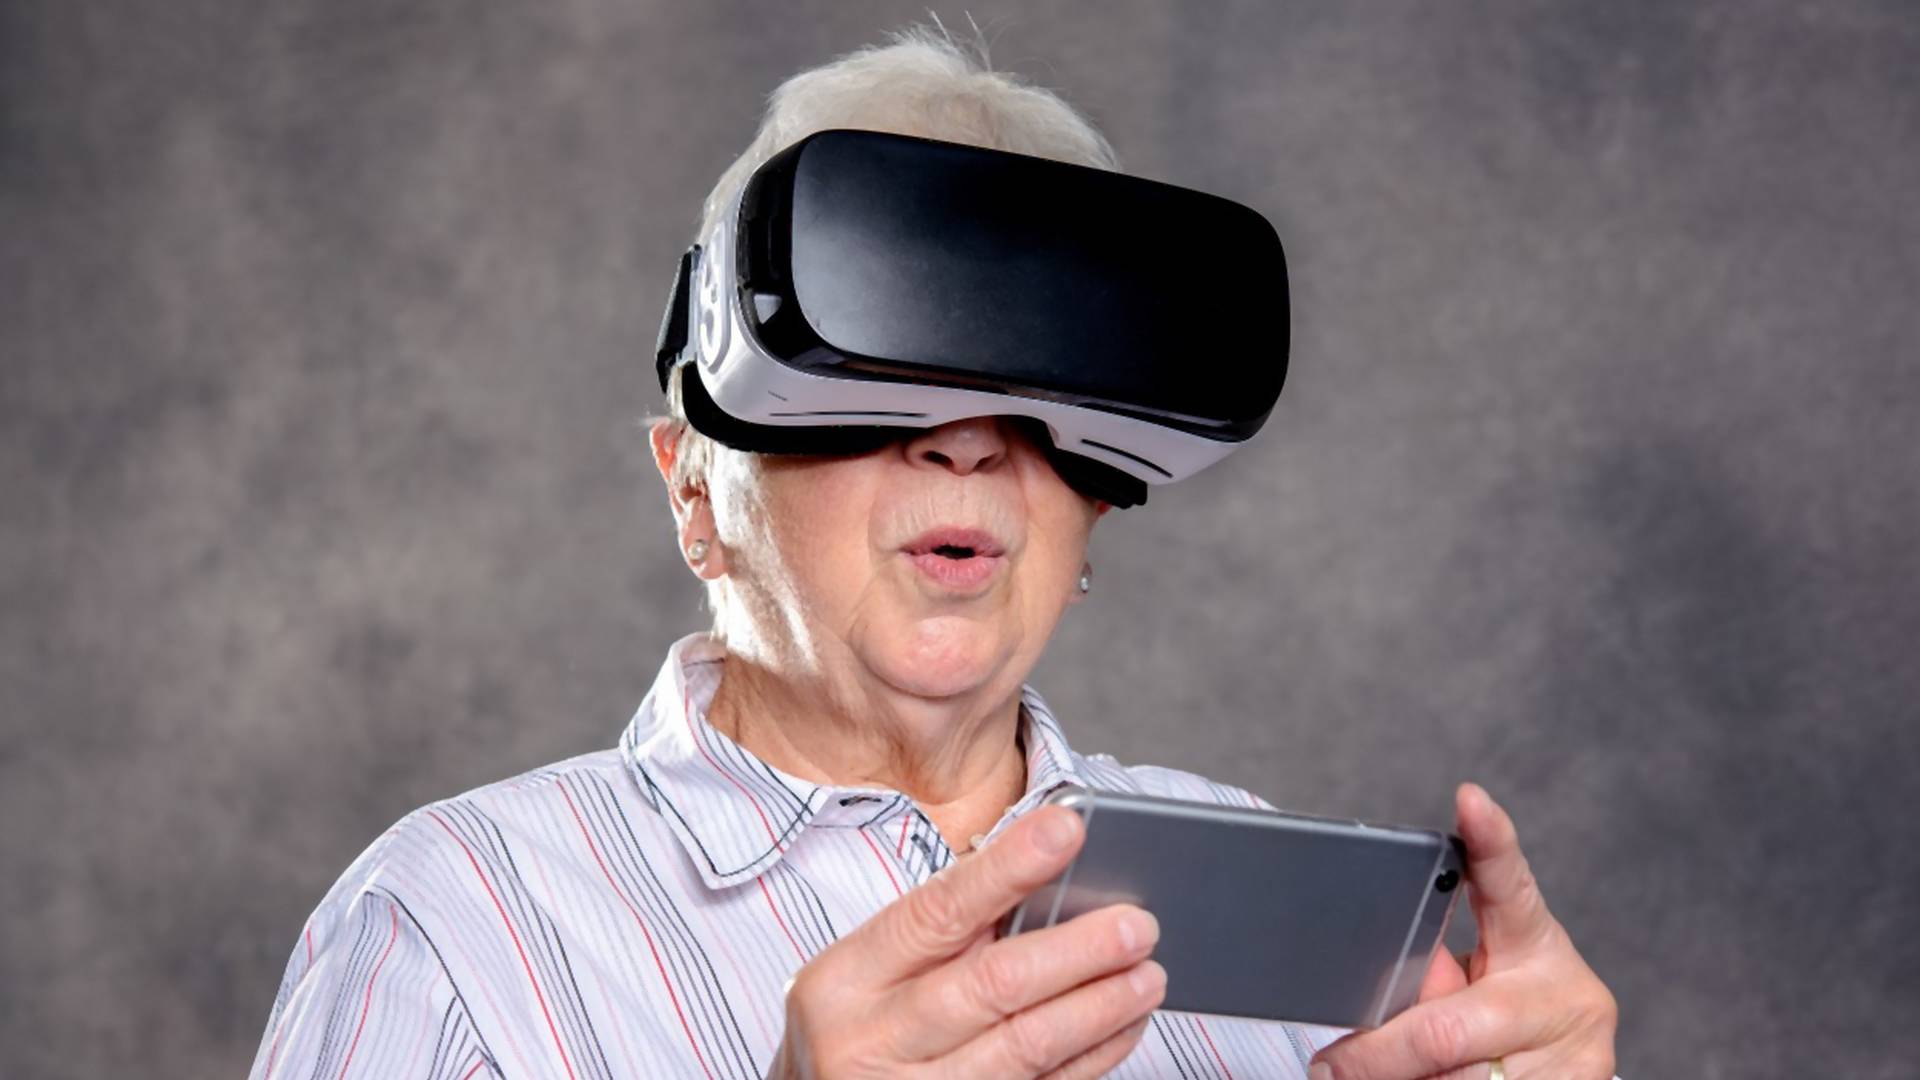 Unuka je našla sjajno rešenje kako da nauči baku da koristi mobilni telefon i imamo viral dana